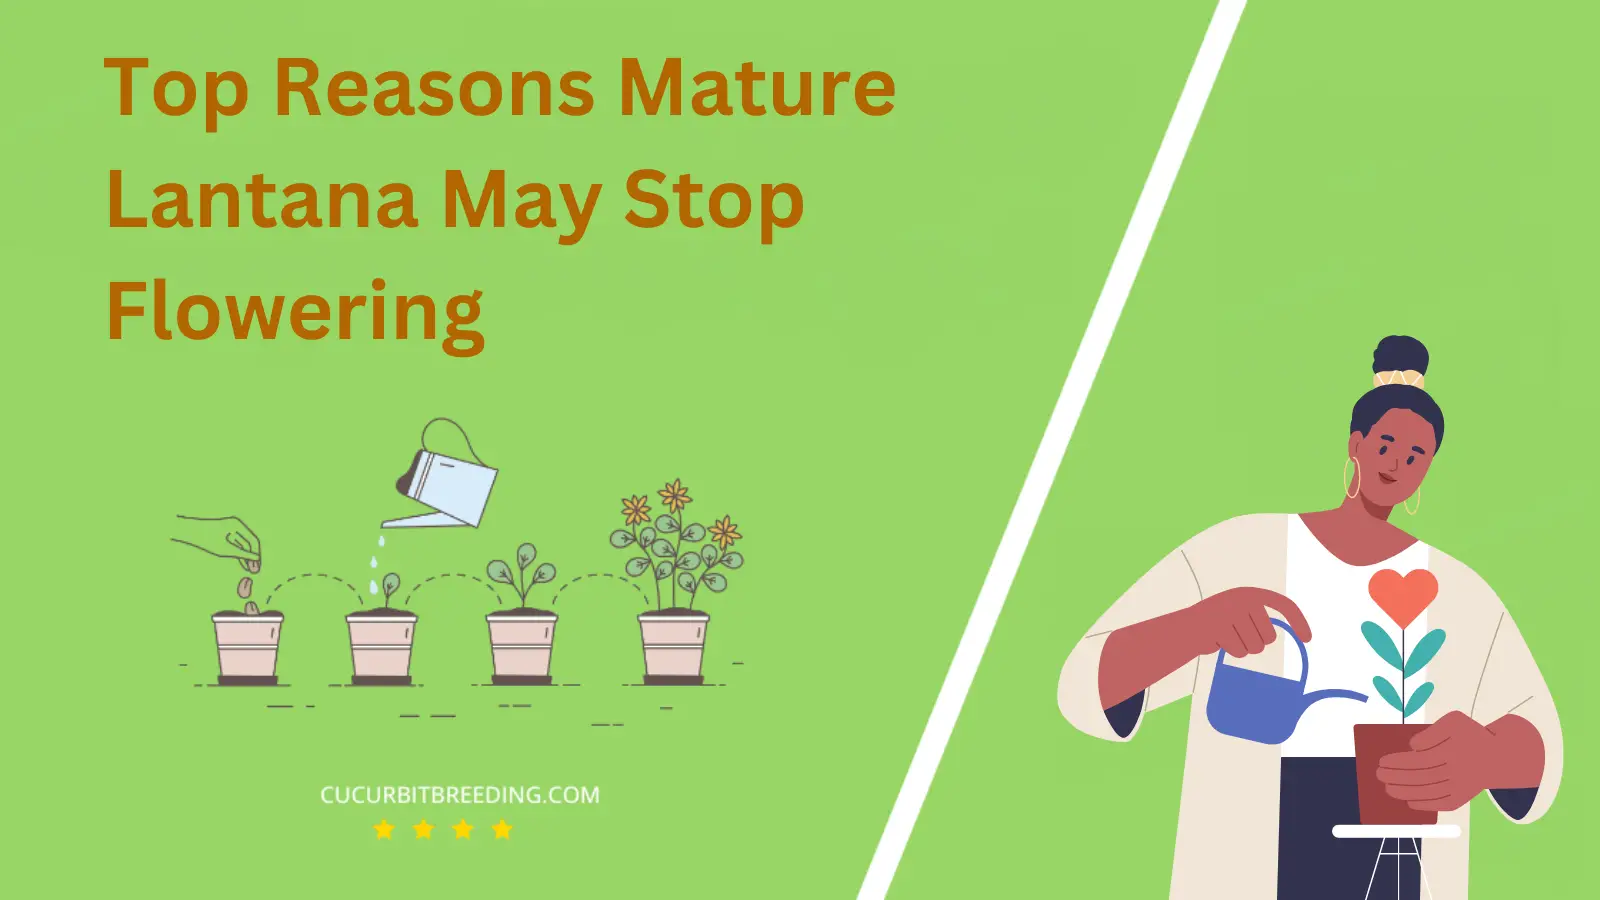 Top Reasons Mature Lantana May Stop Flowering